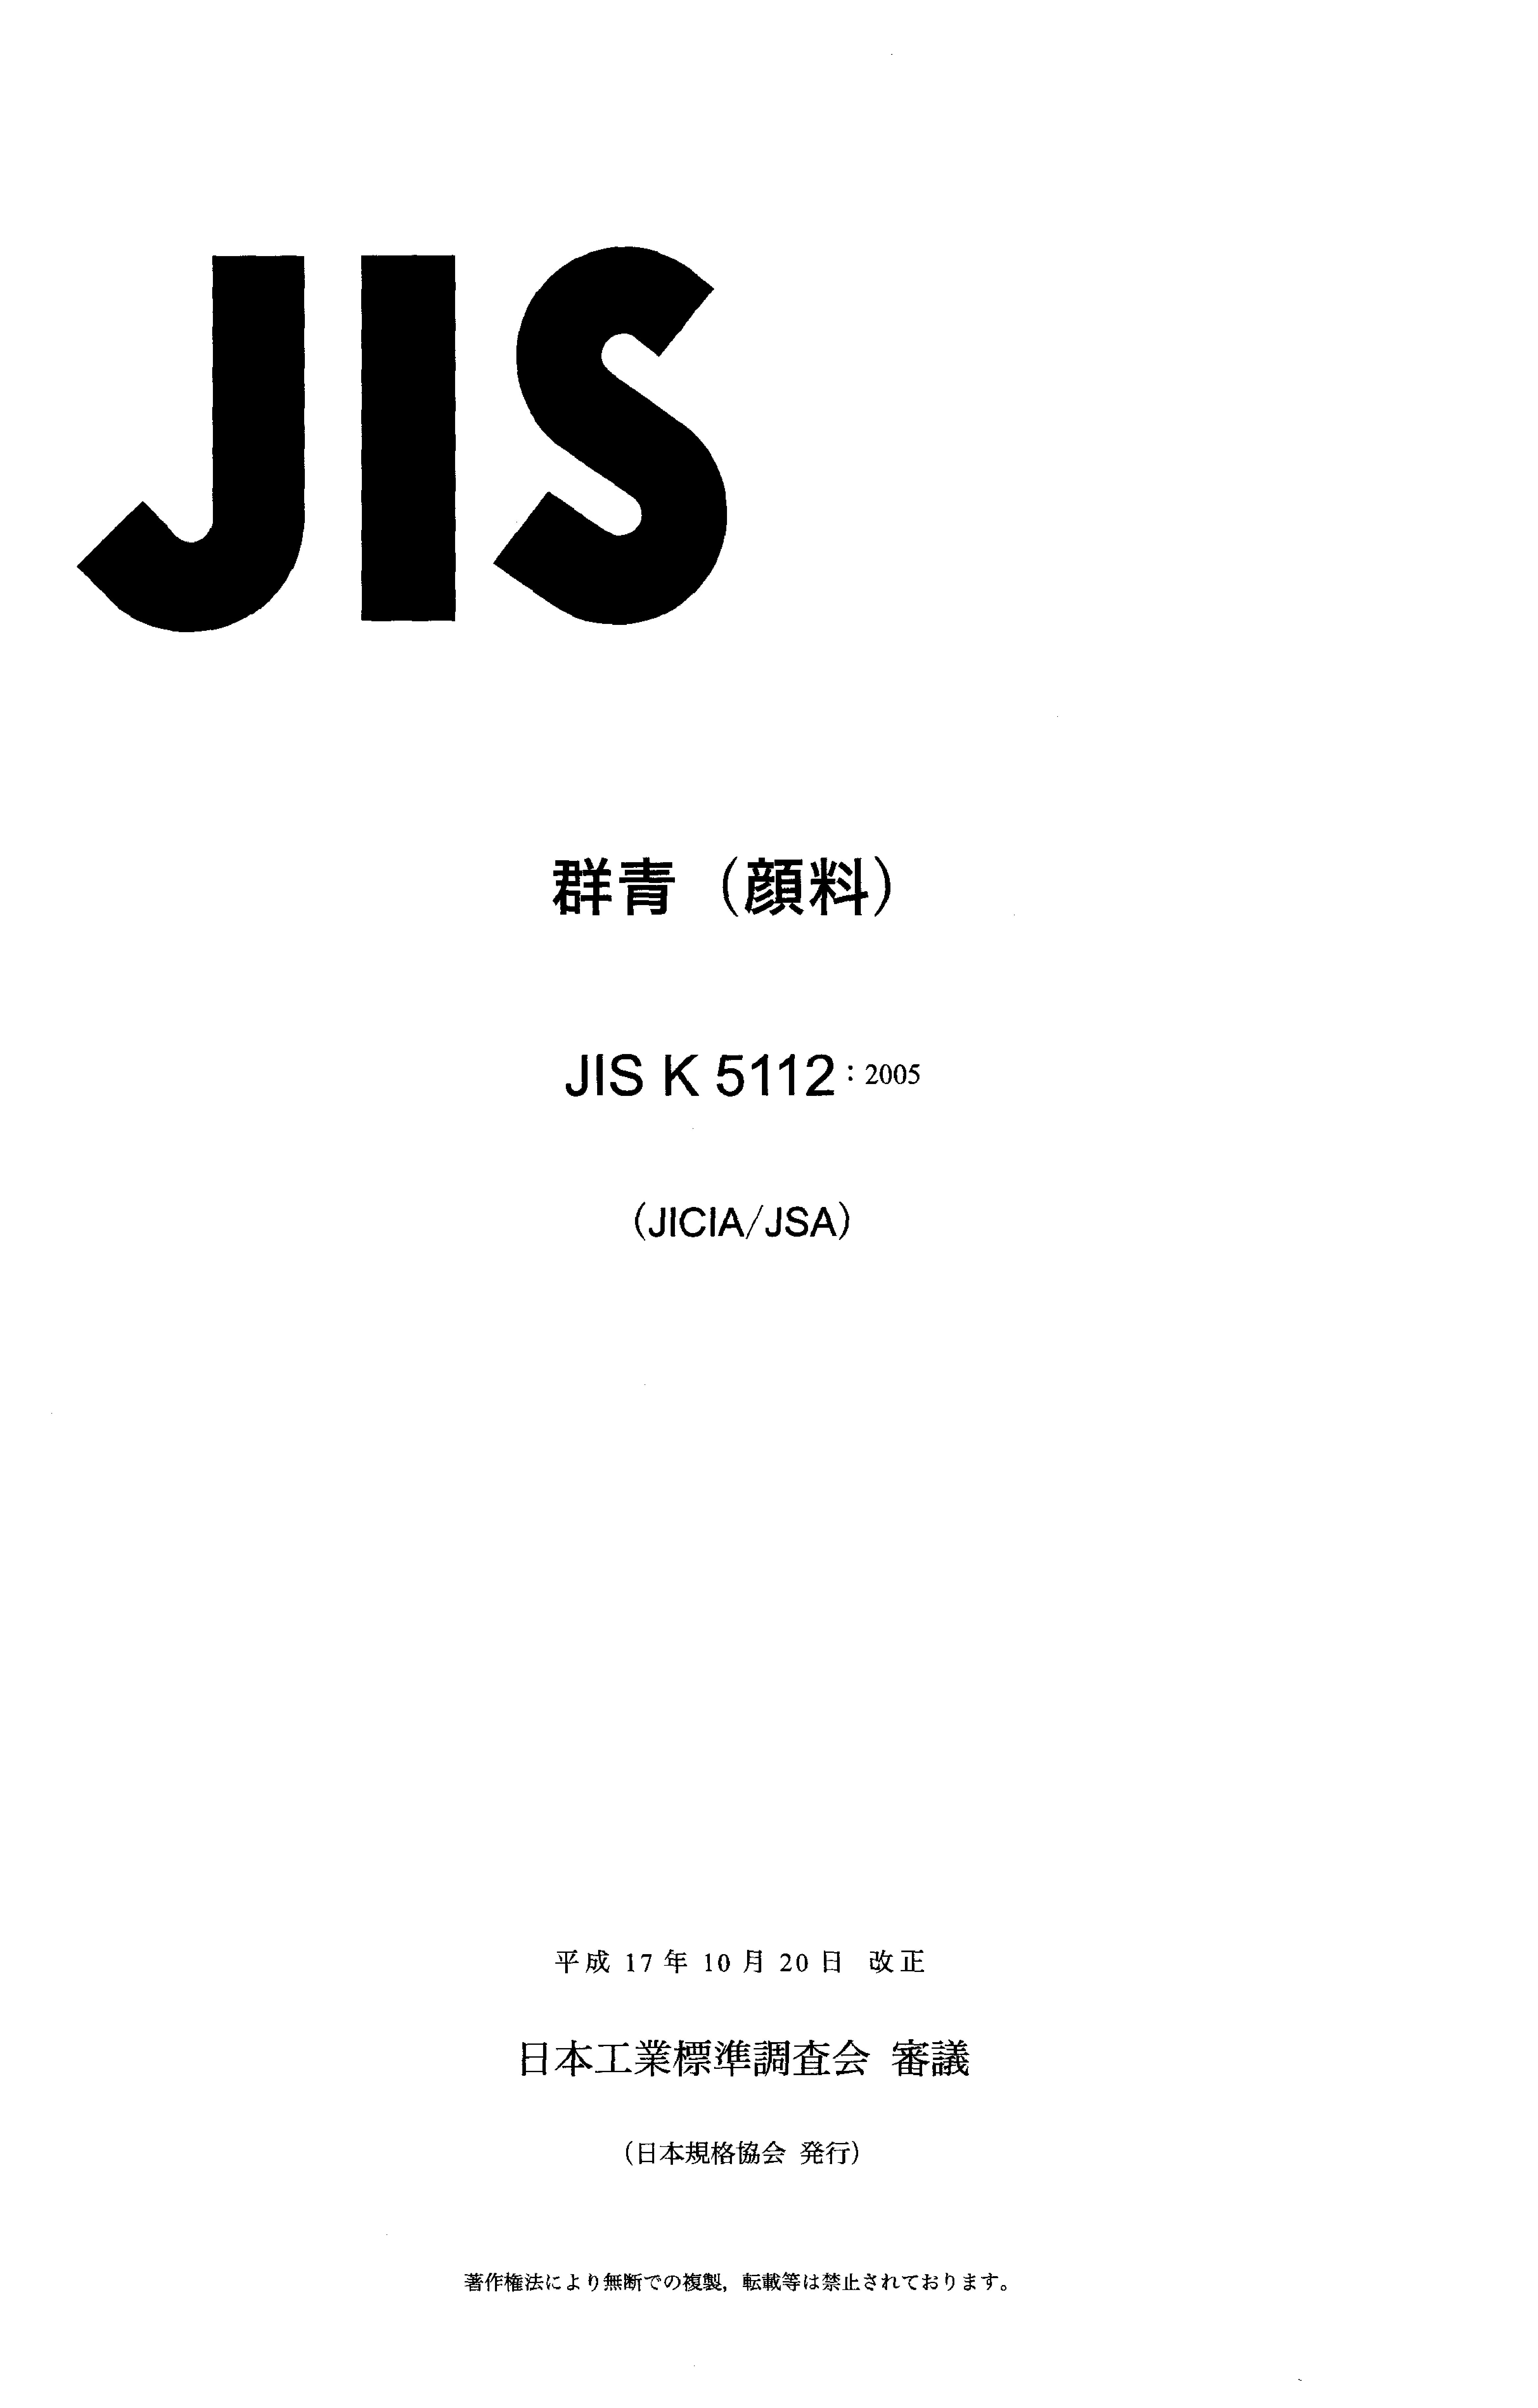 JIS K 5112:2005封面图